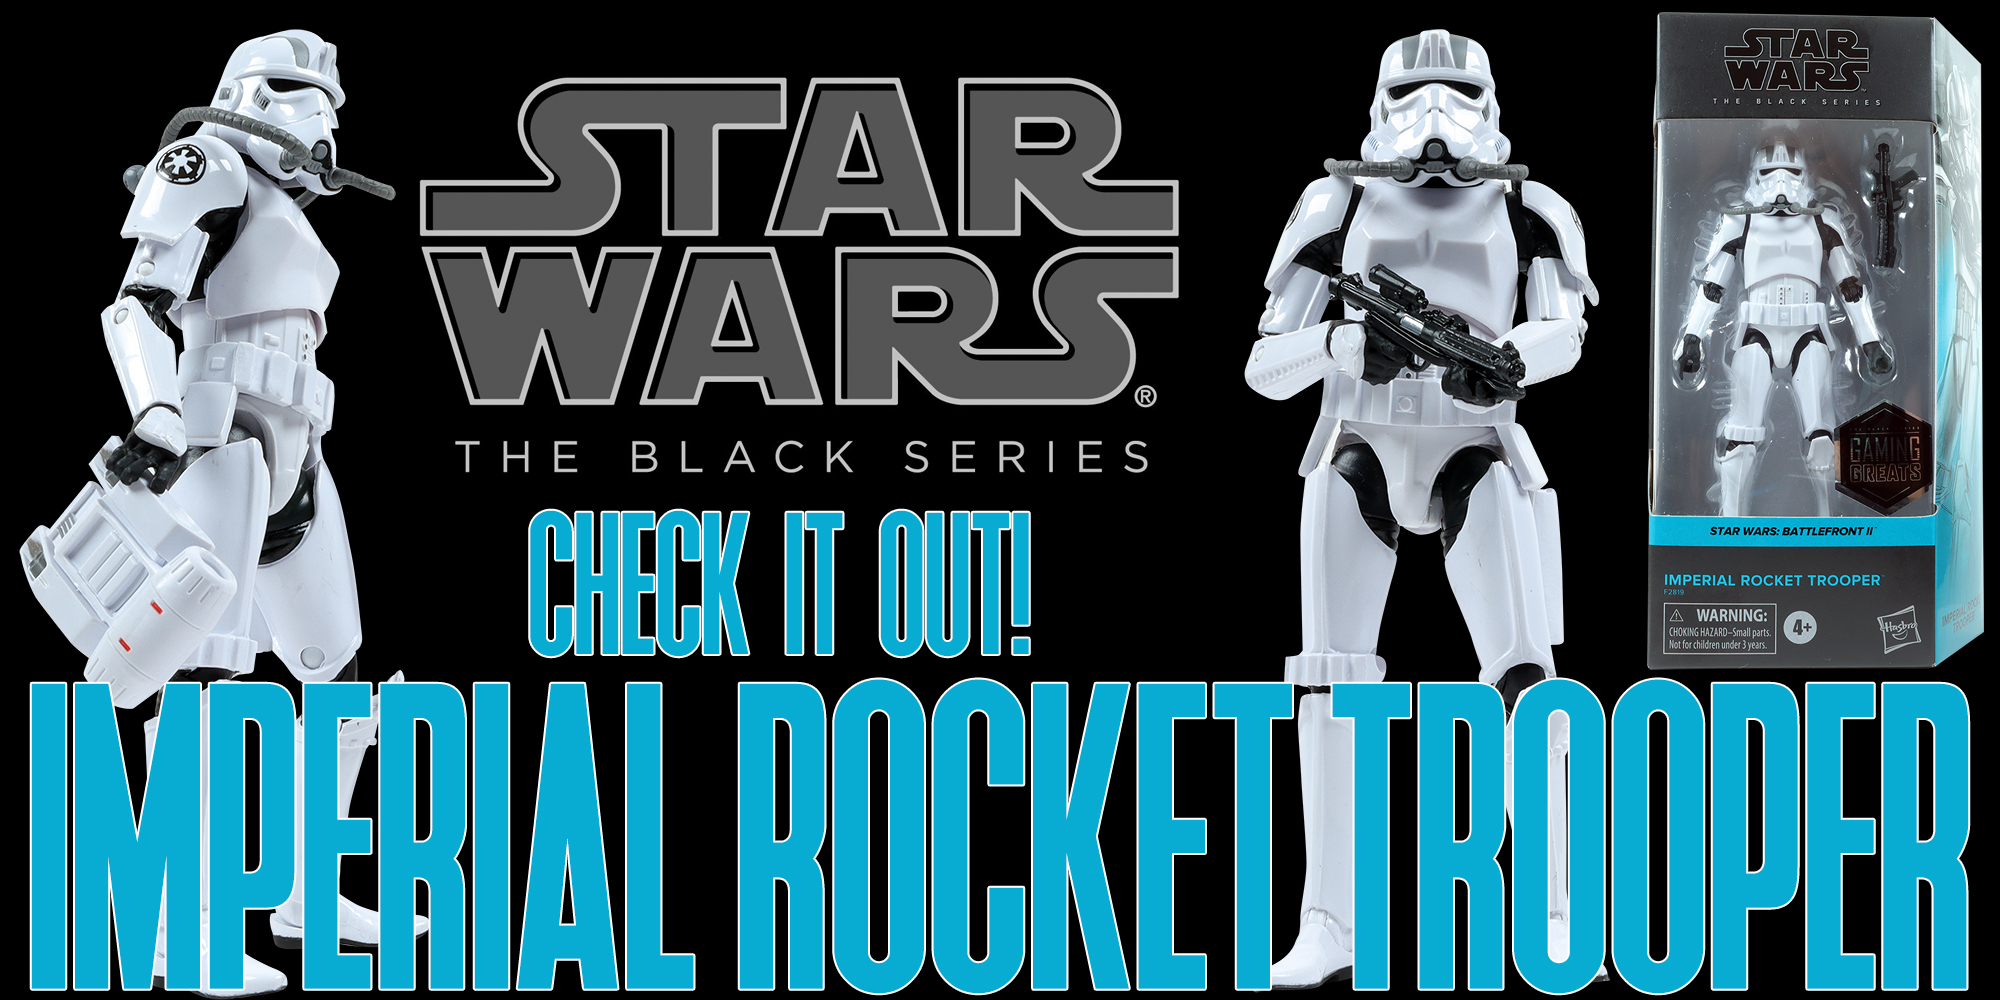 Black Series Imperial Rocket Trooper Added